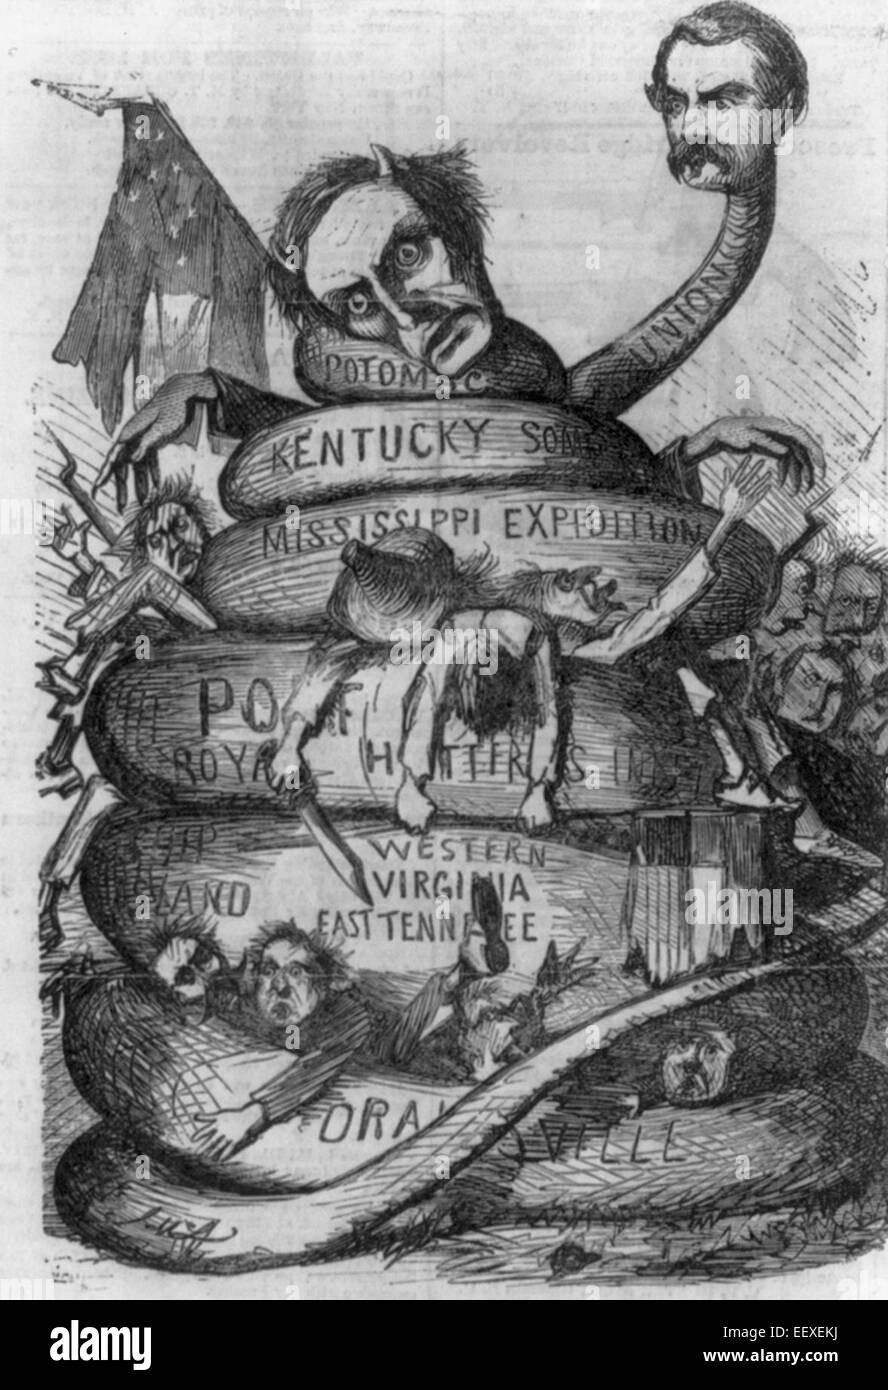 Little Mac Union Squeeze - Cartoon zeigt General McClellan als eine Schlange mit einengenden Spulen um Konföderation, einschließlich Jeff Davis als Satan; USA Bürgerkrieg Cartoon, ca. 1862 Stockfoto